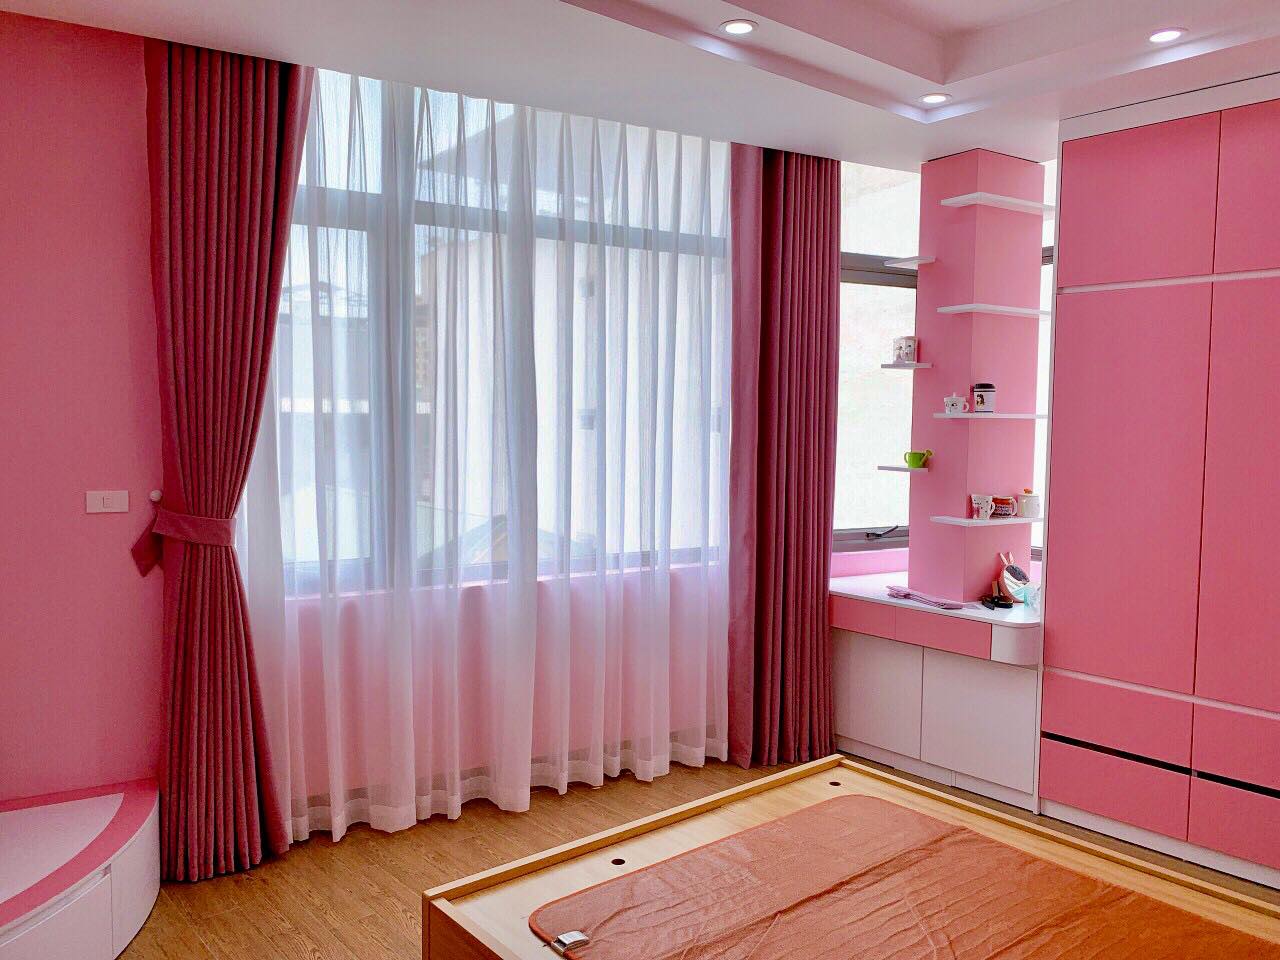 Rèm vải màu hồng - Rèm Văn Phòng Giá Rẻ, Rèm Cửa Cao Cấp Giá Rẻ Hà Nội